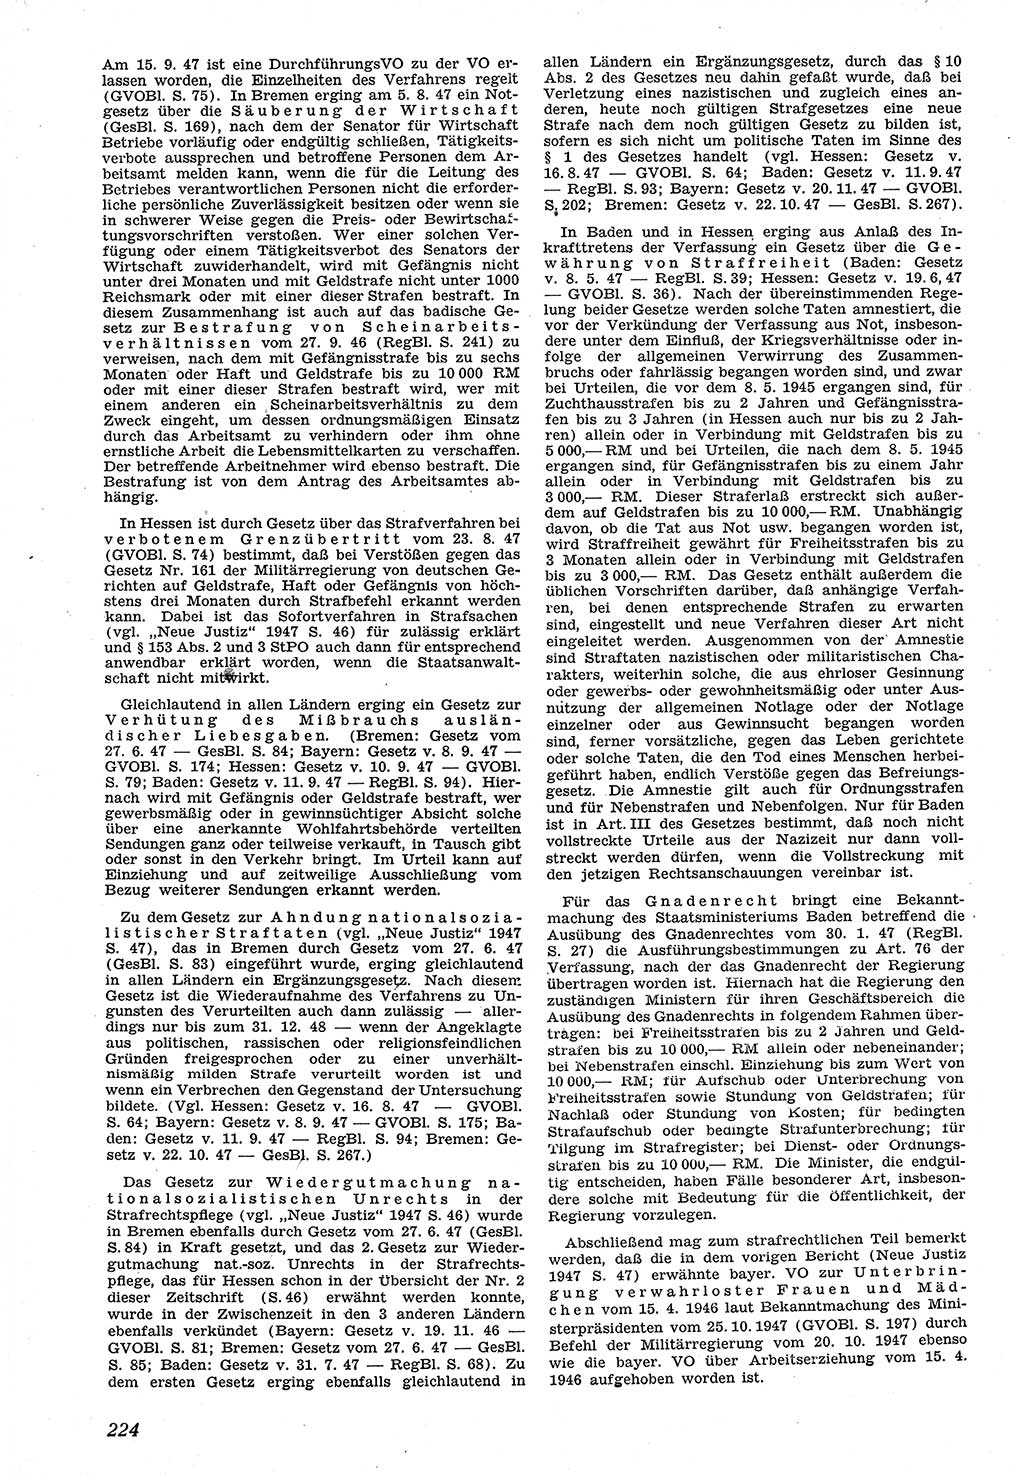 Neue Justiz (NJ), Zeitschrift für Recht und Rechtswissenschaft [Sowjetische Besatzungszone (SBZ) Deutschland], 1. Jahrgang 1947, Seite 224 (NJ SBZ Dtl. 1947, S. 224)